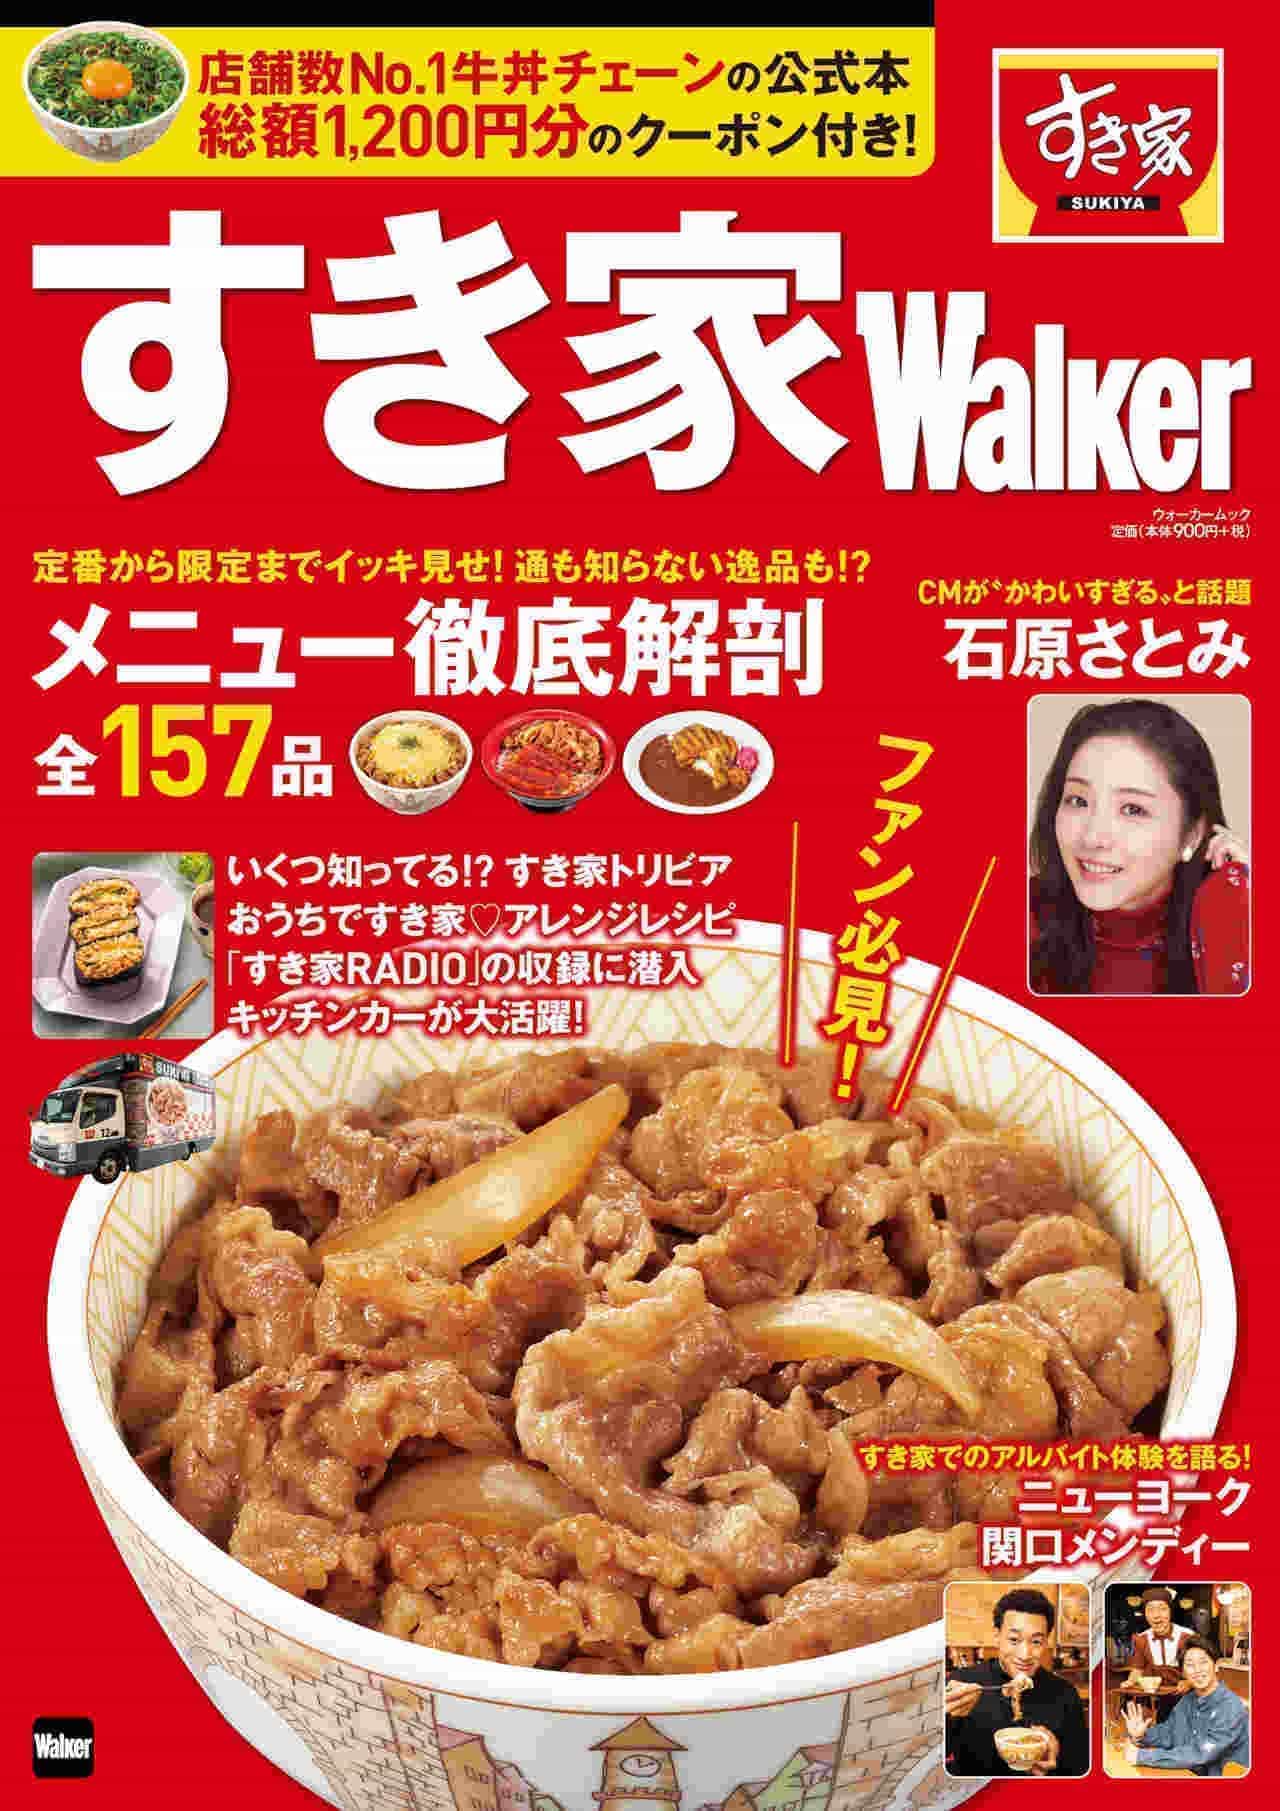 Sukiya's first official book "Sukiya Walker